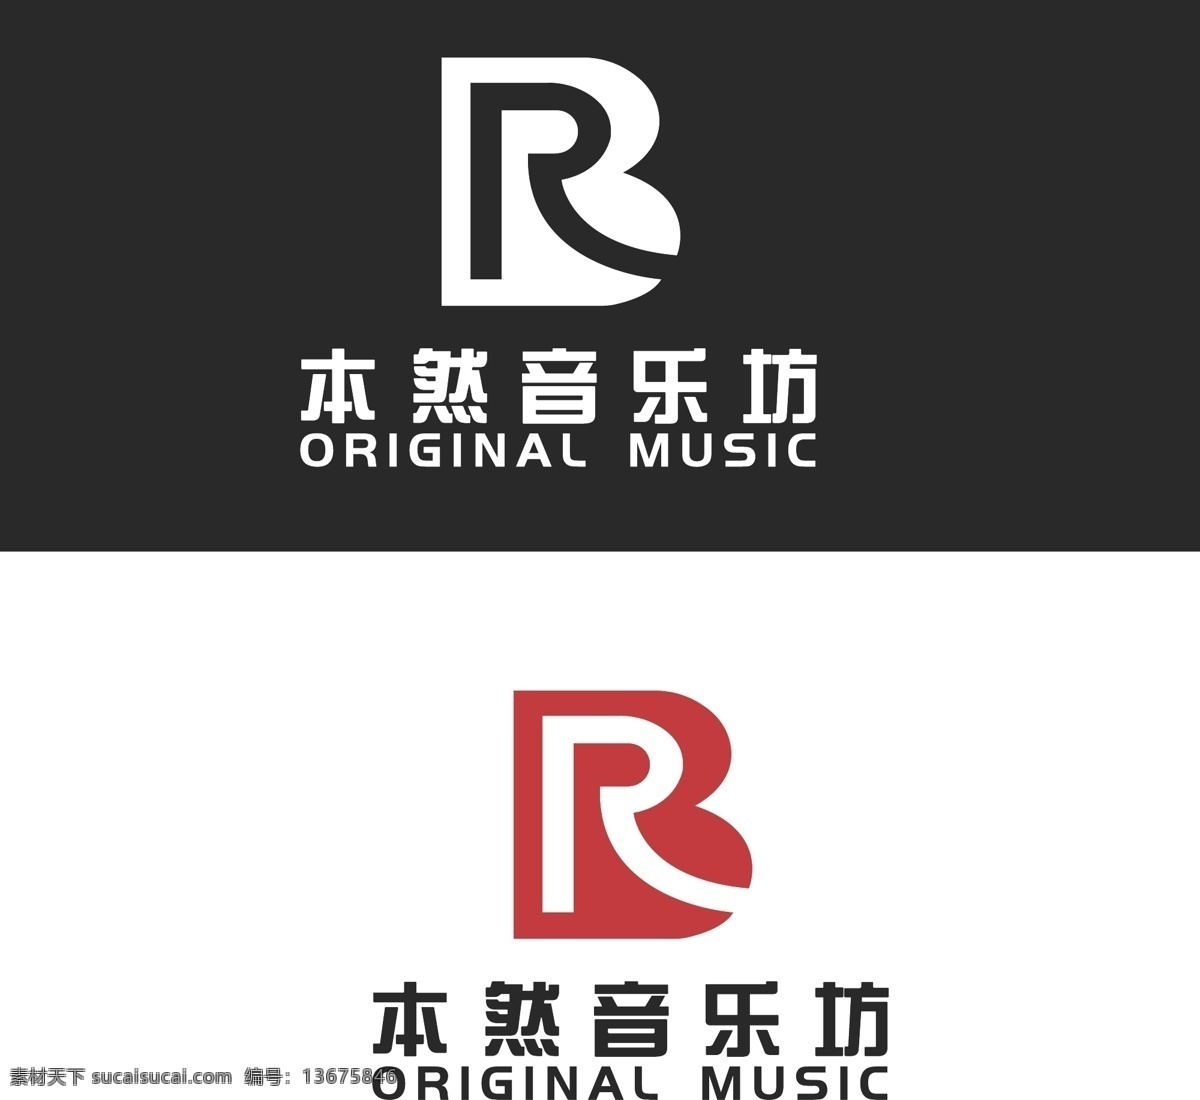 音乐 logo 模板 音乐logo rblogo 样机logo 大写logo